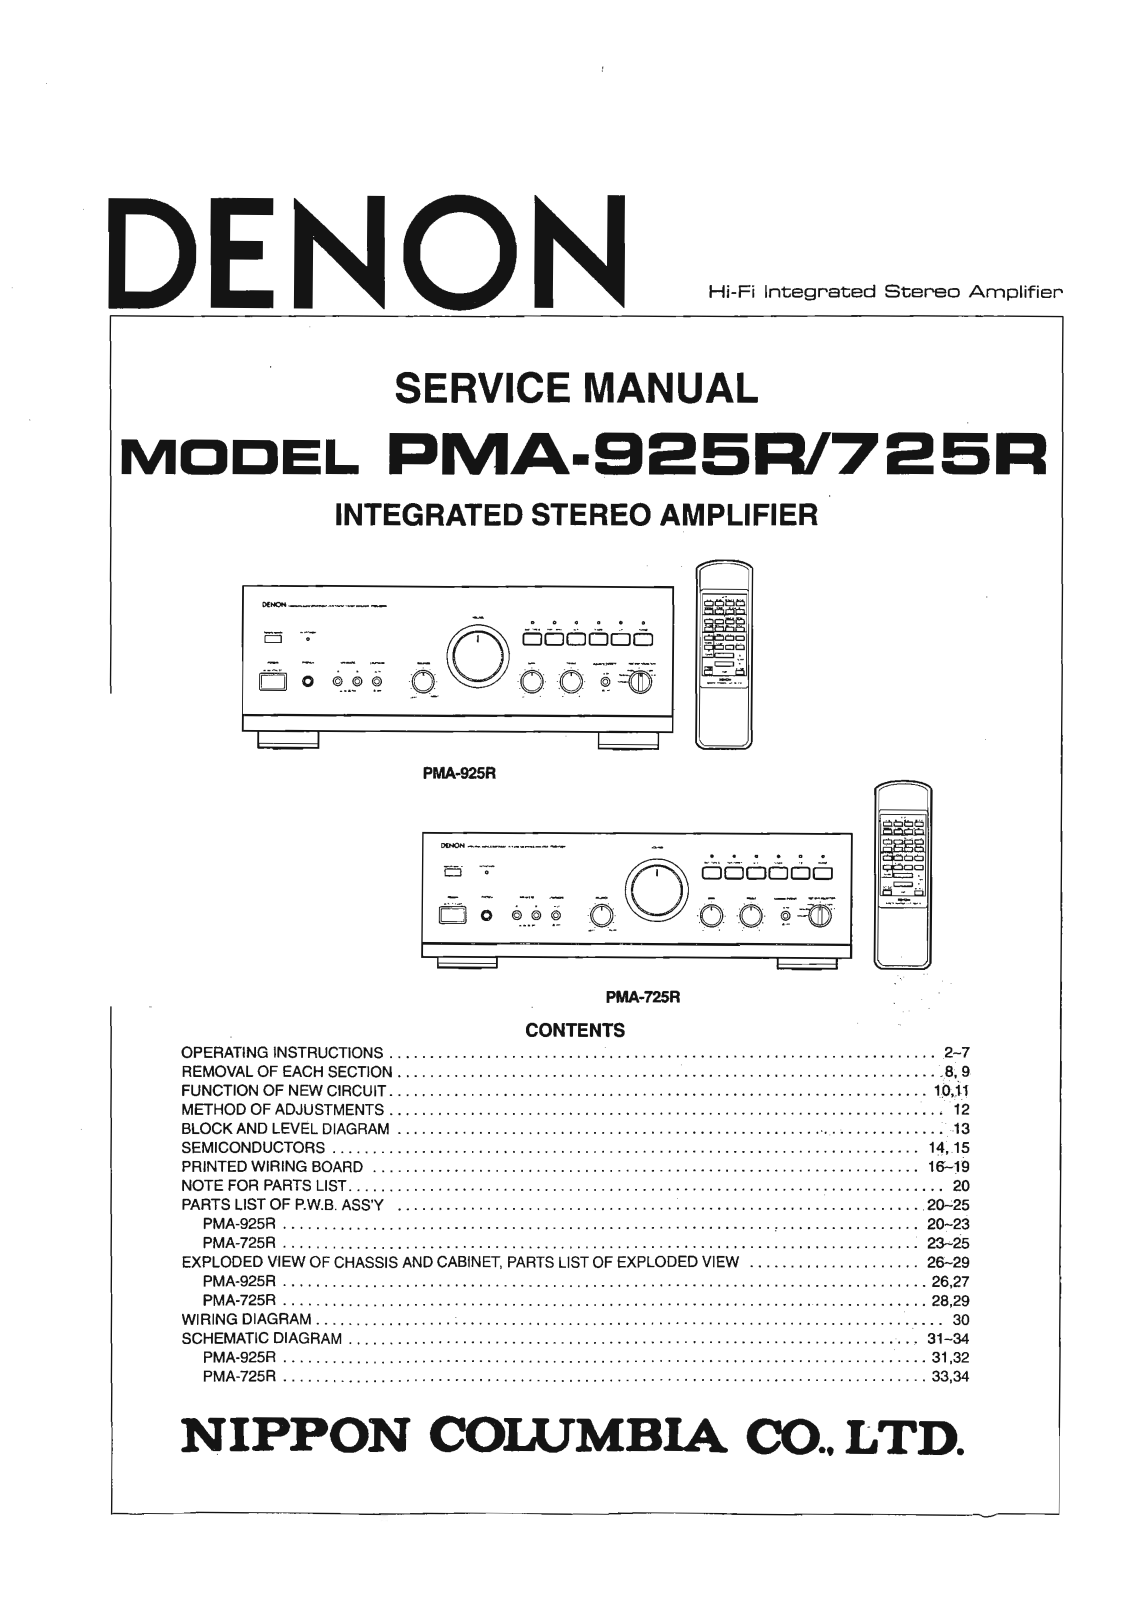 Denon PMA-925R Service Manual